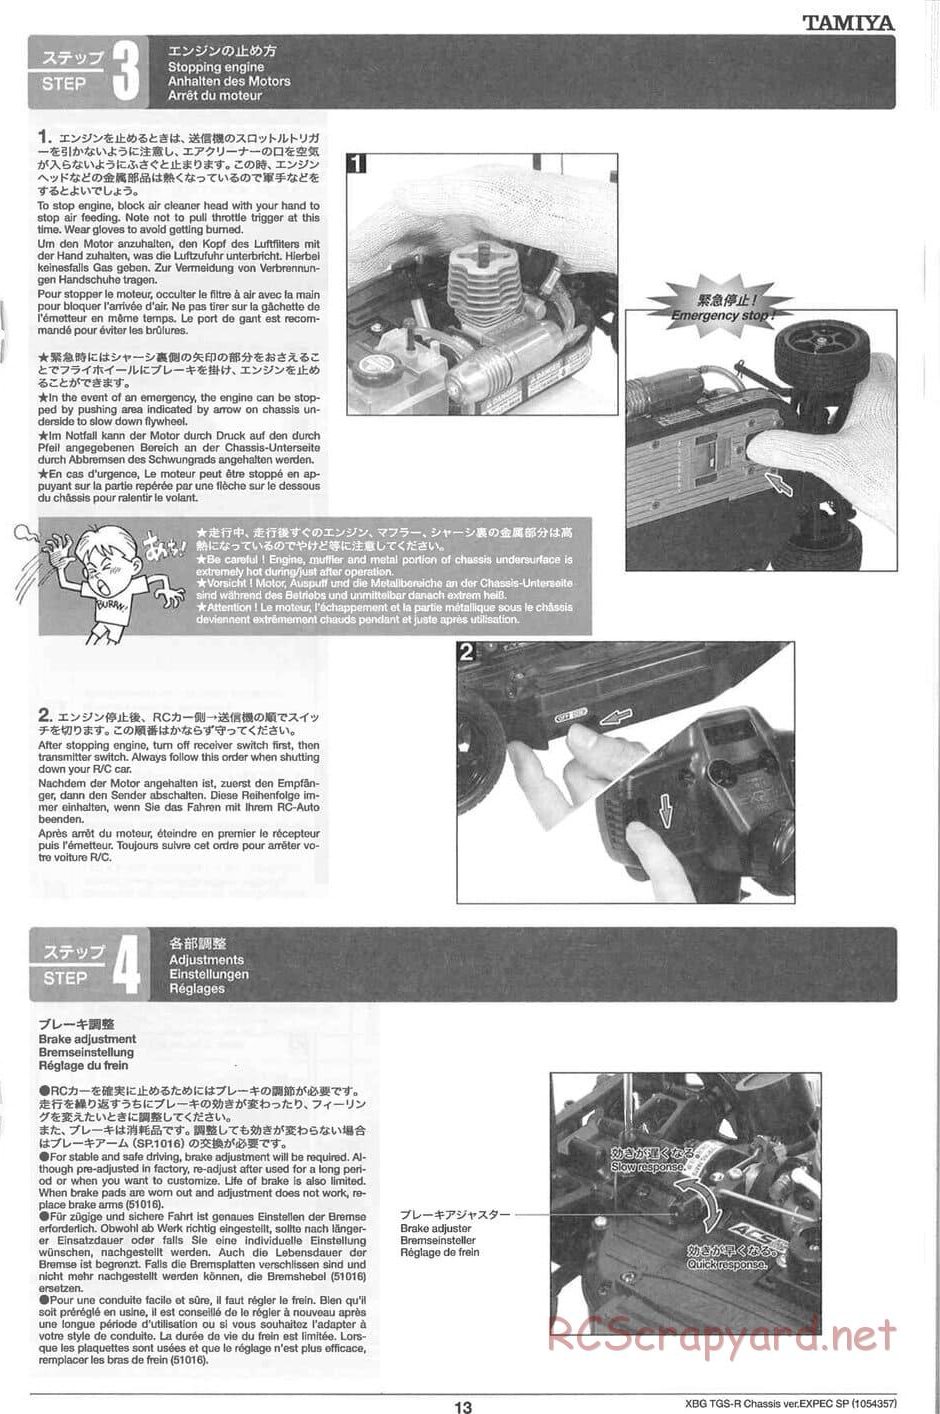 Tamiya - TGS-R Chassis - Manual - Page 13